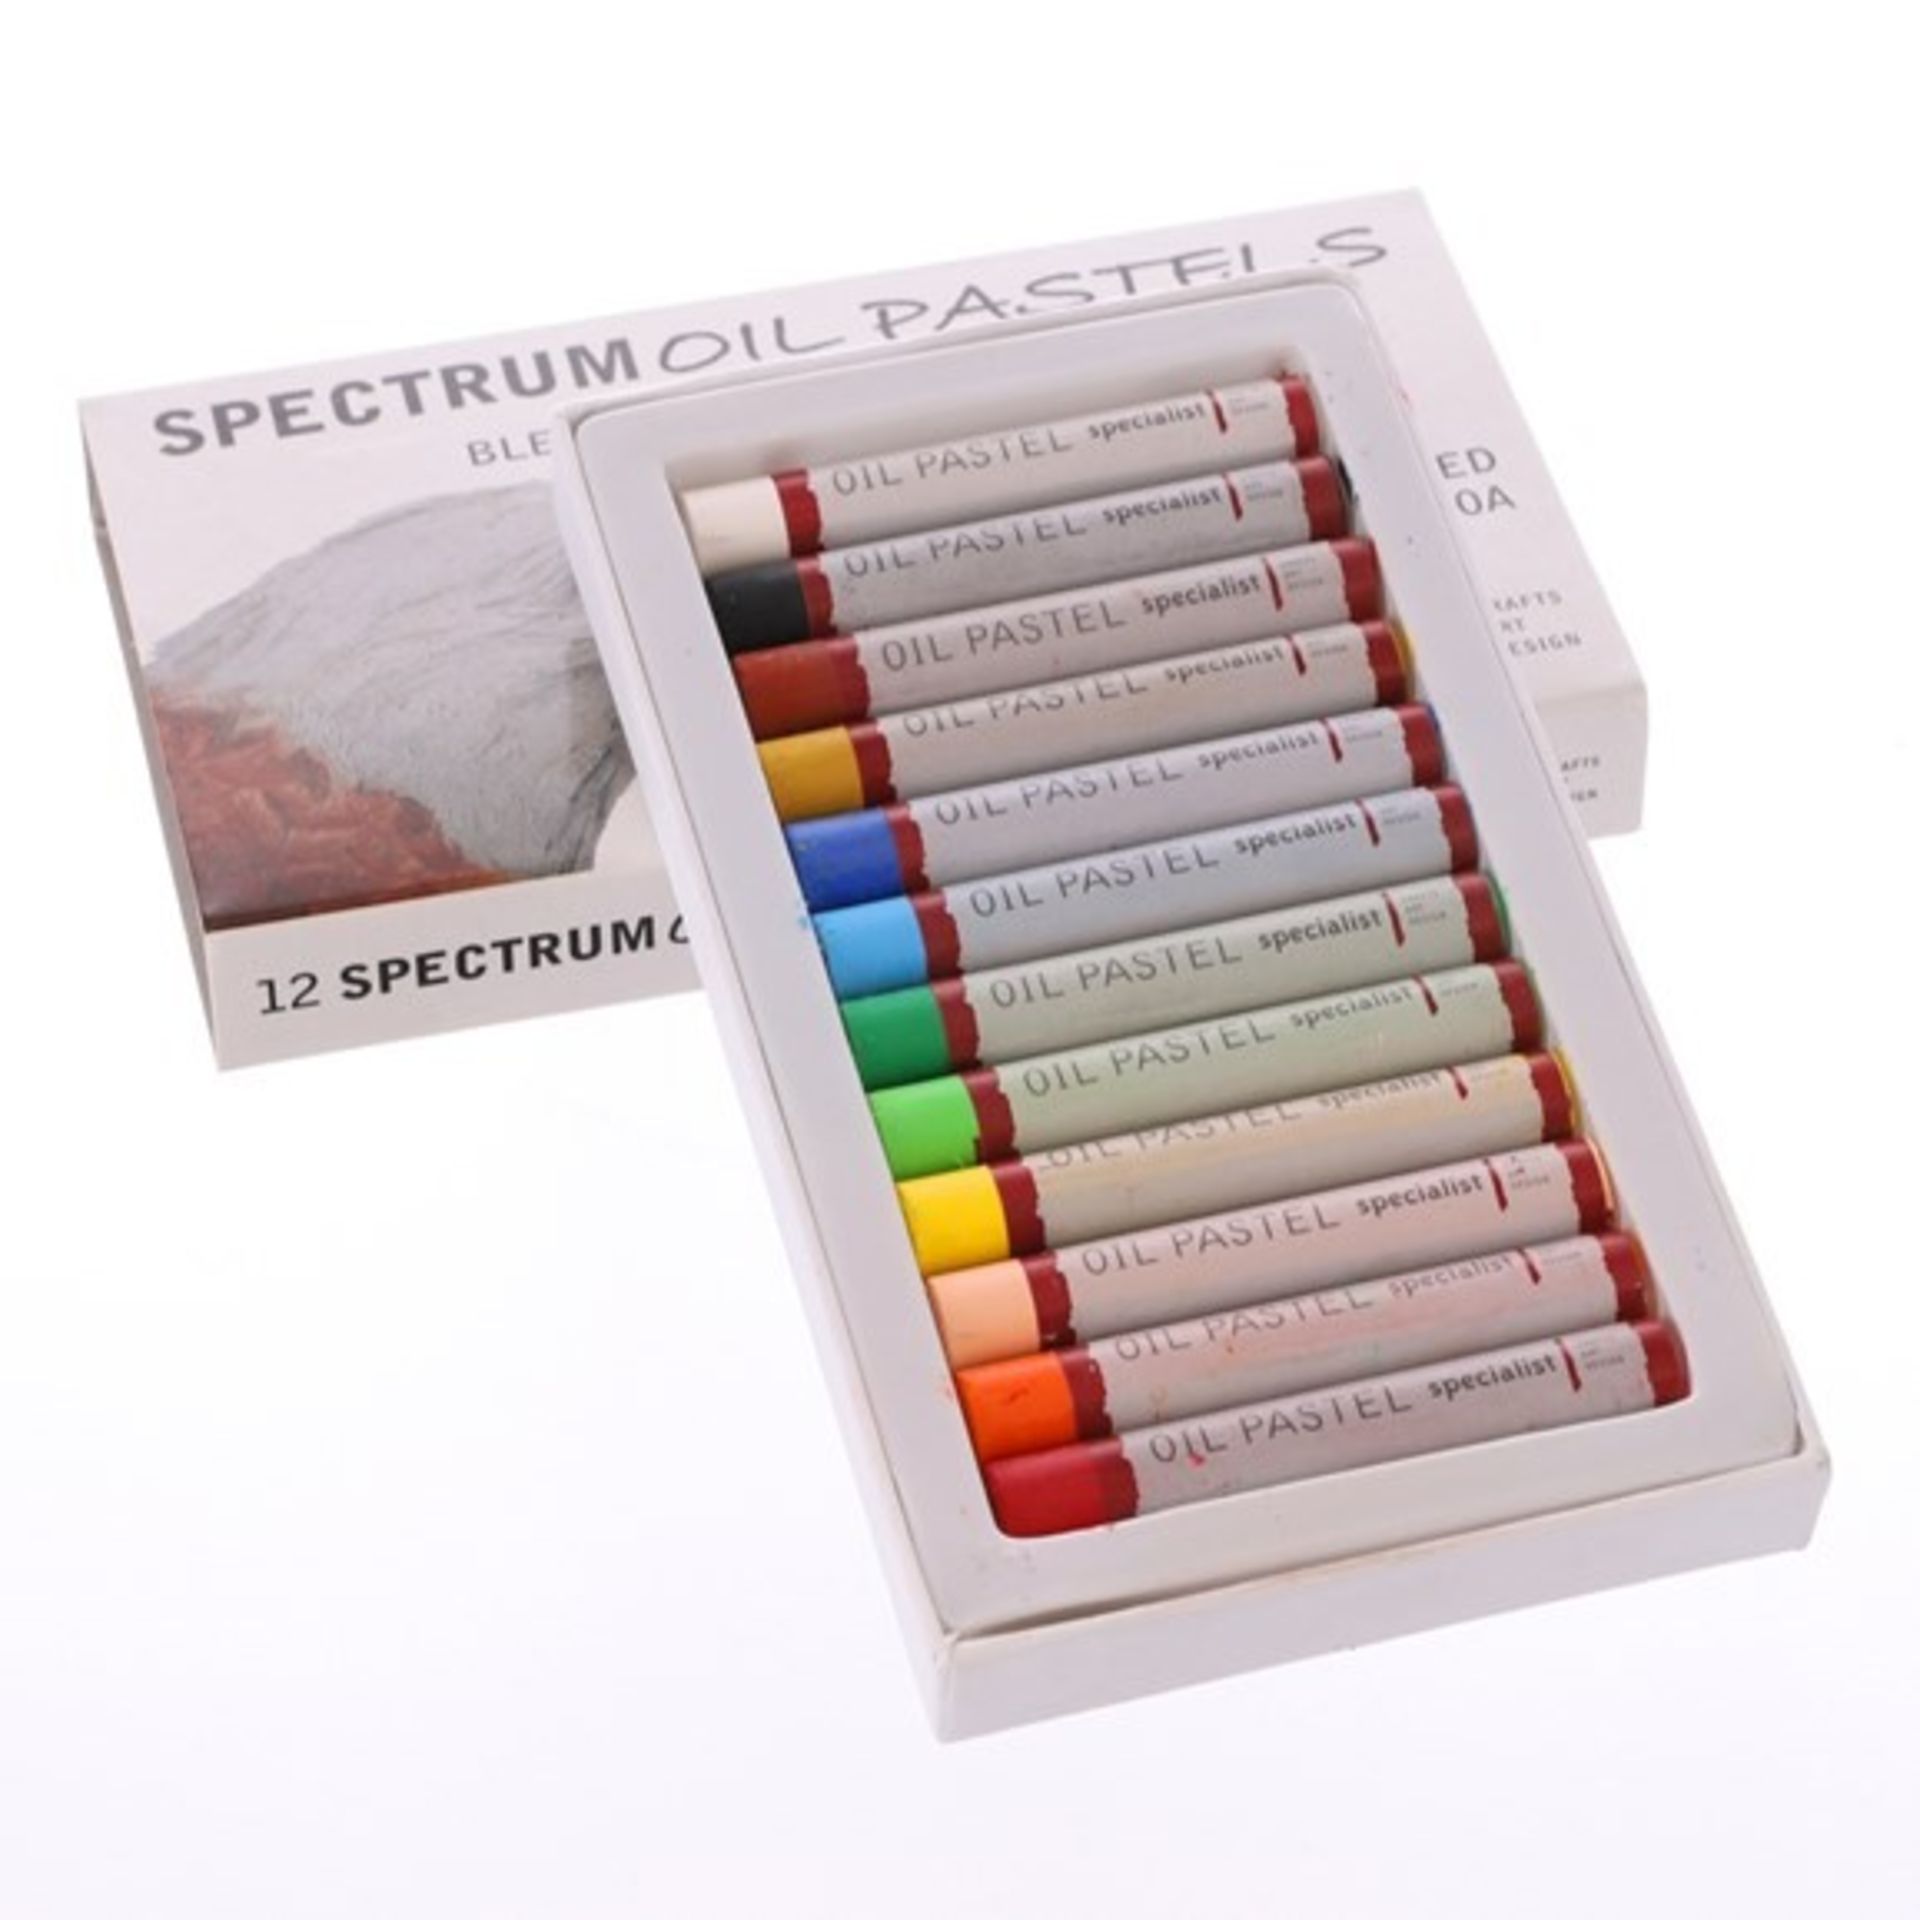 RRP £8.60 - Spectrum Oil Pastels - Pack of 12. - 4 packs in total